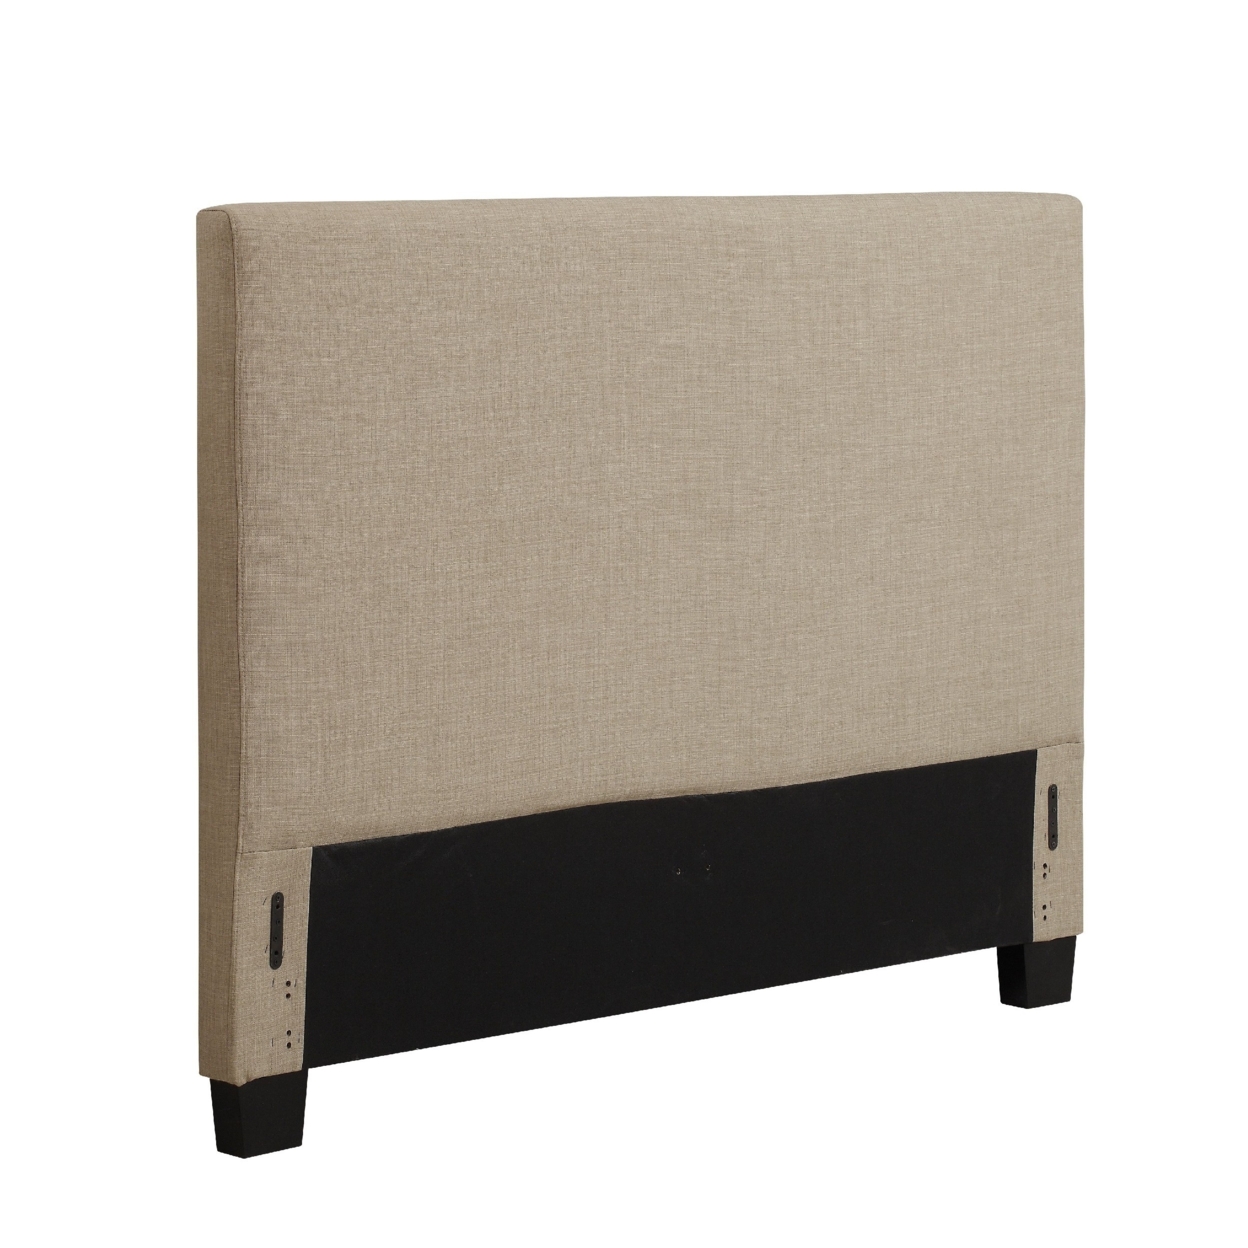 Elle Full Size Upholstered Panel Headboard, Beige- Saltoro Sherpi